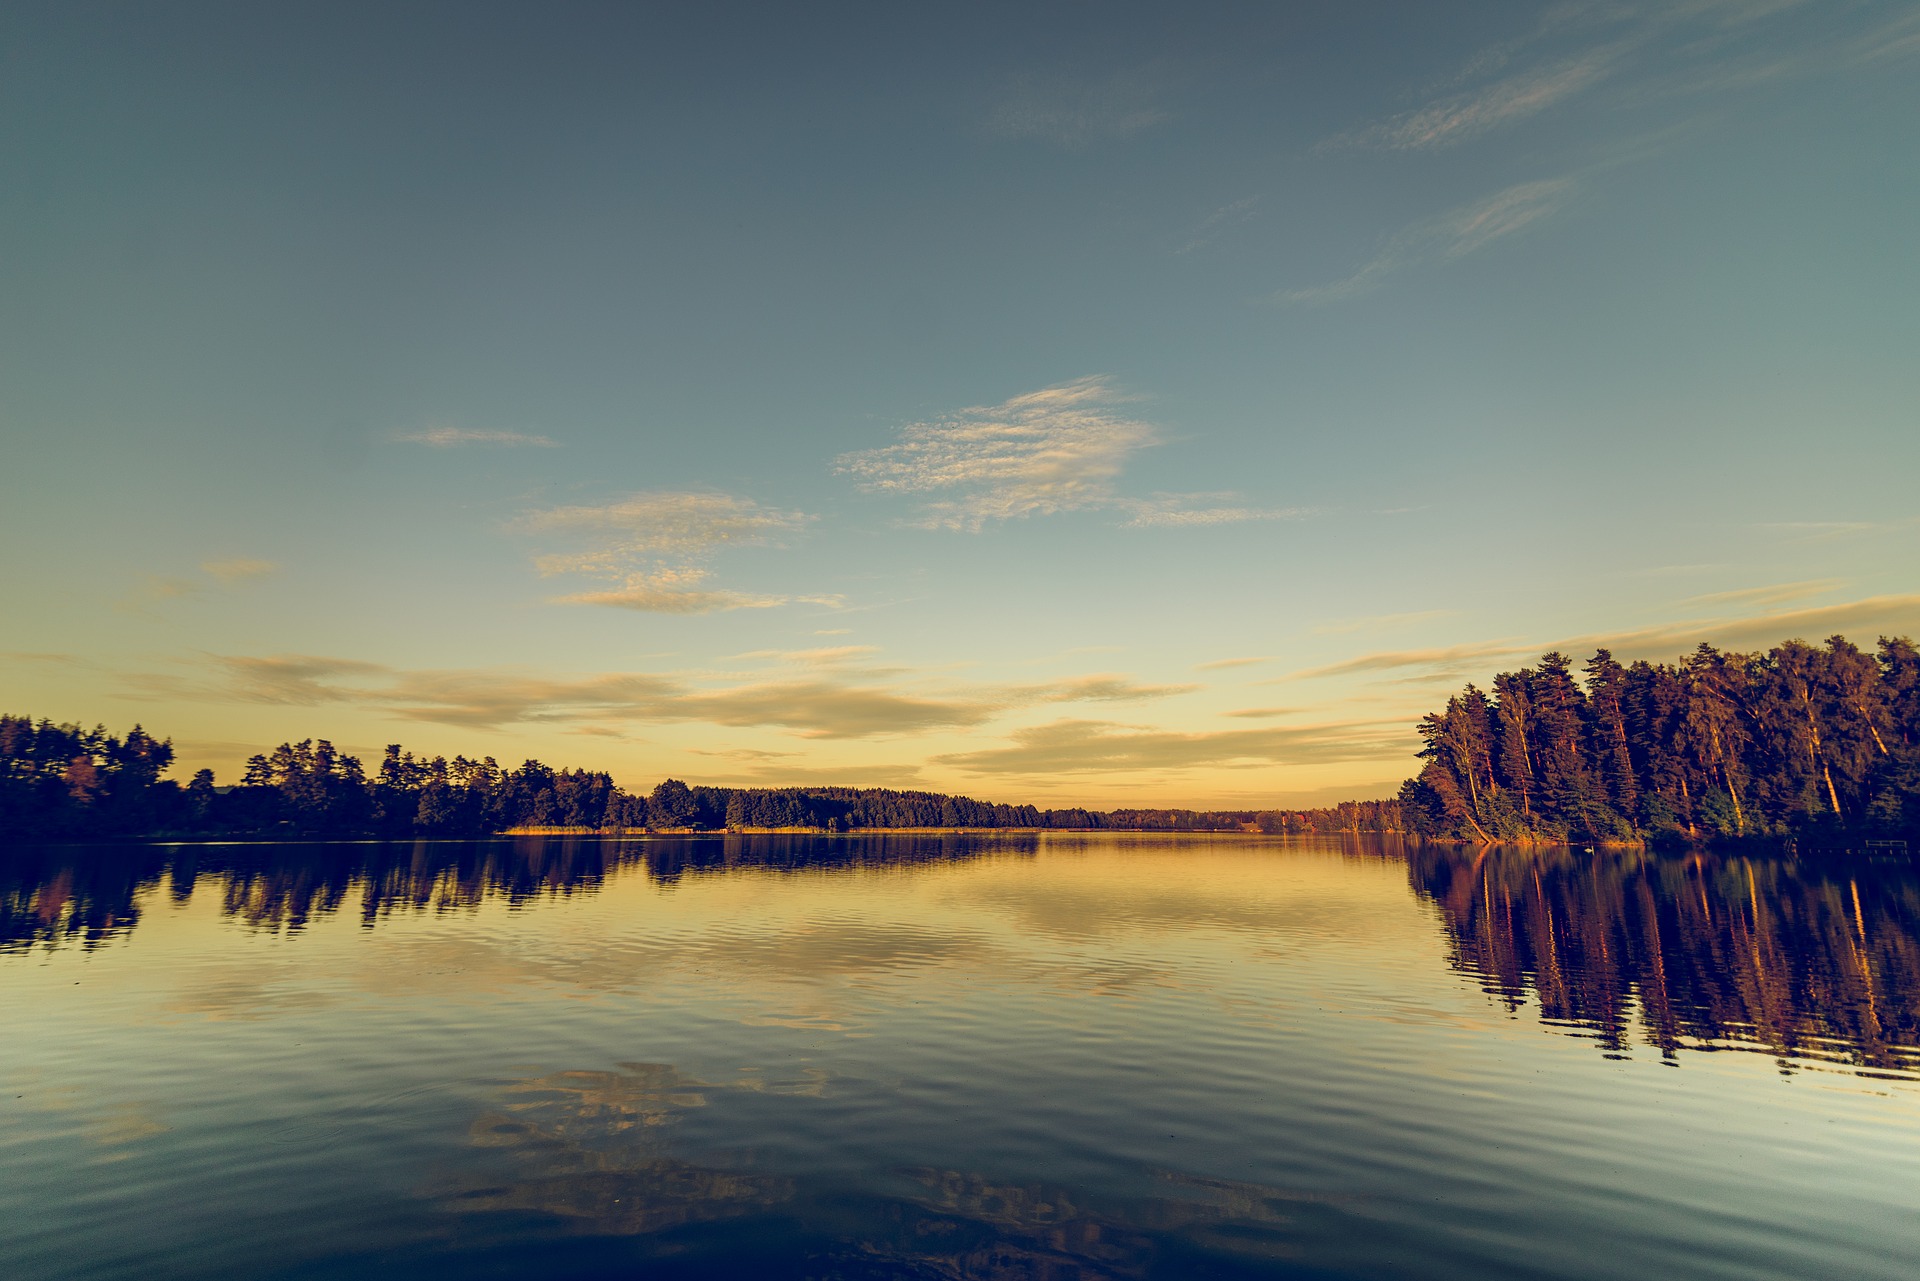 Eko-aplikacja pomoże chronić Krainę Tysiąca Jezior